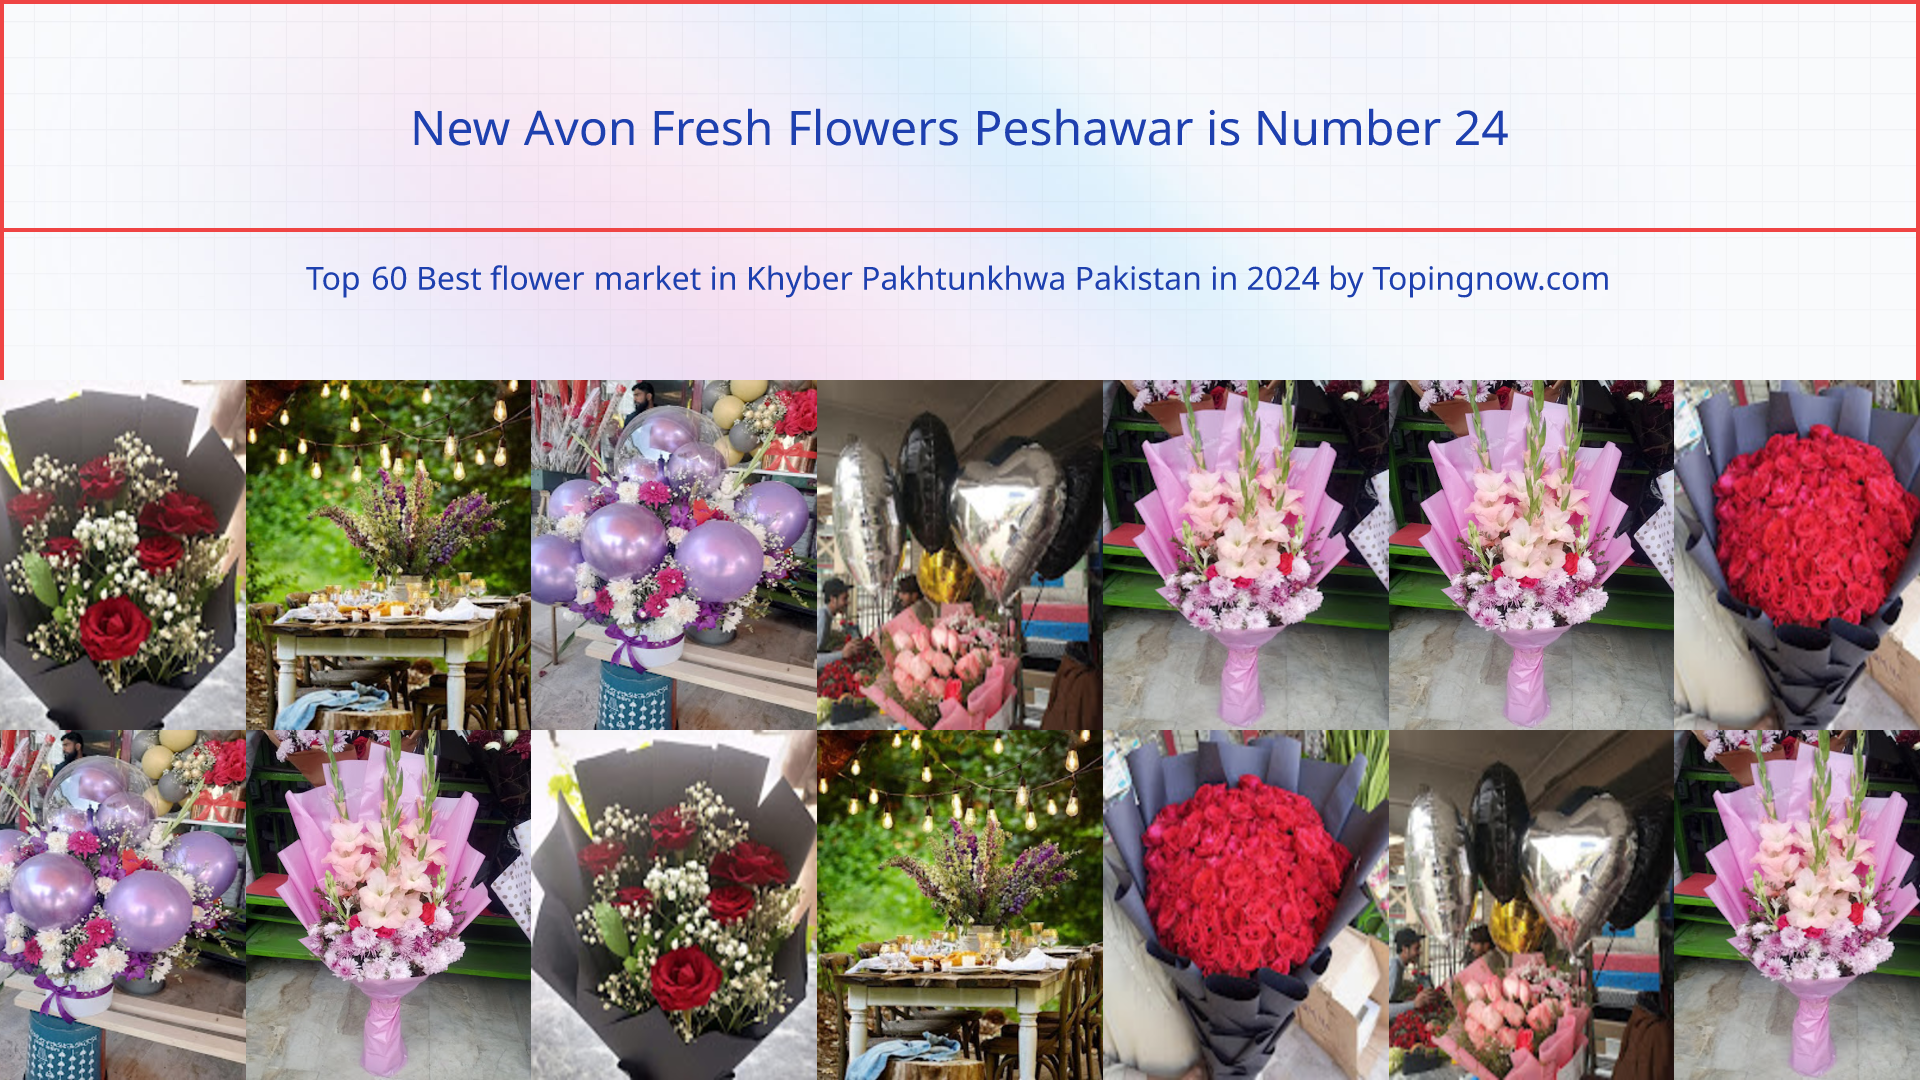 New Avon Fresh Flowers Peshawar: Top 60 Best flower market in Khyber Pakhtunkhwa Pakistan in 2024